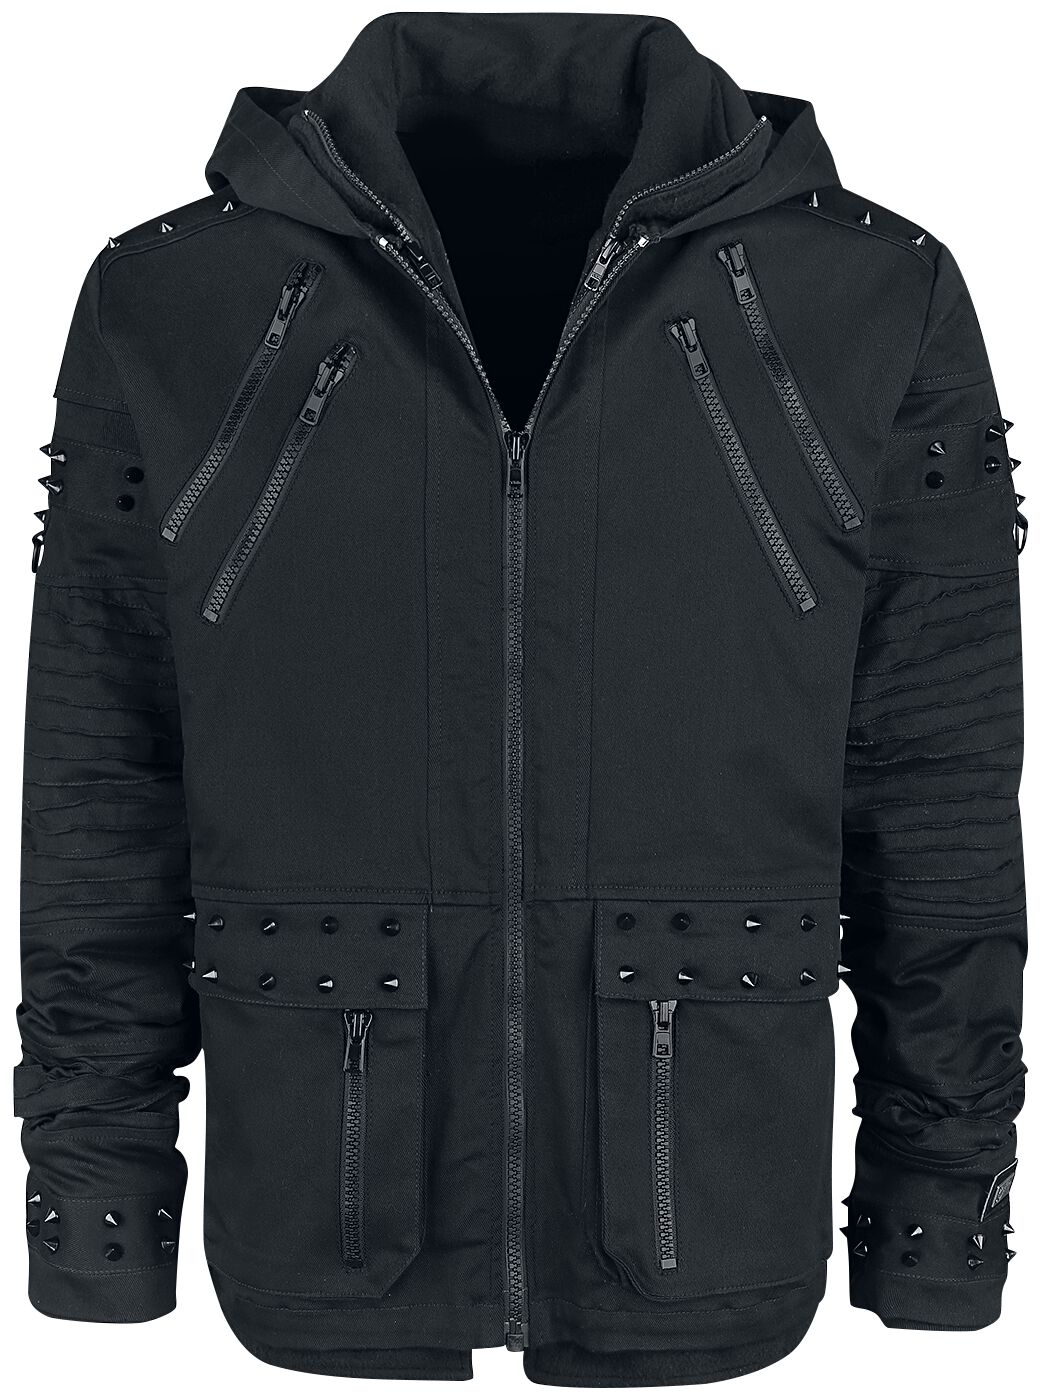 Vixxsin - Gothic Winterjacke - Black Chrome Jacket - S bis XXL - für Männer - Größe M - schwarz